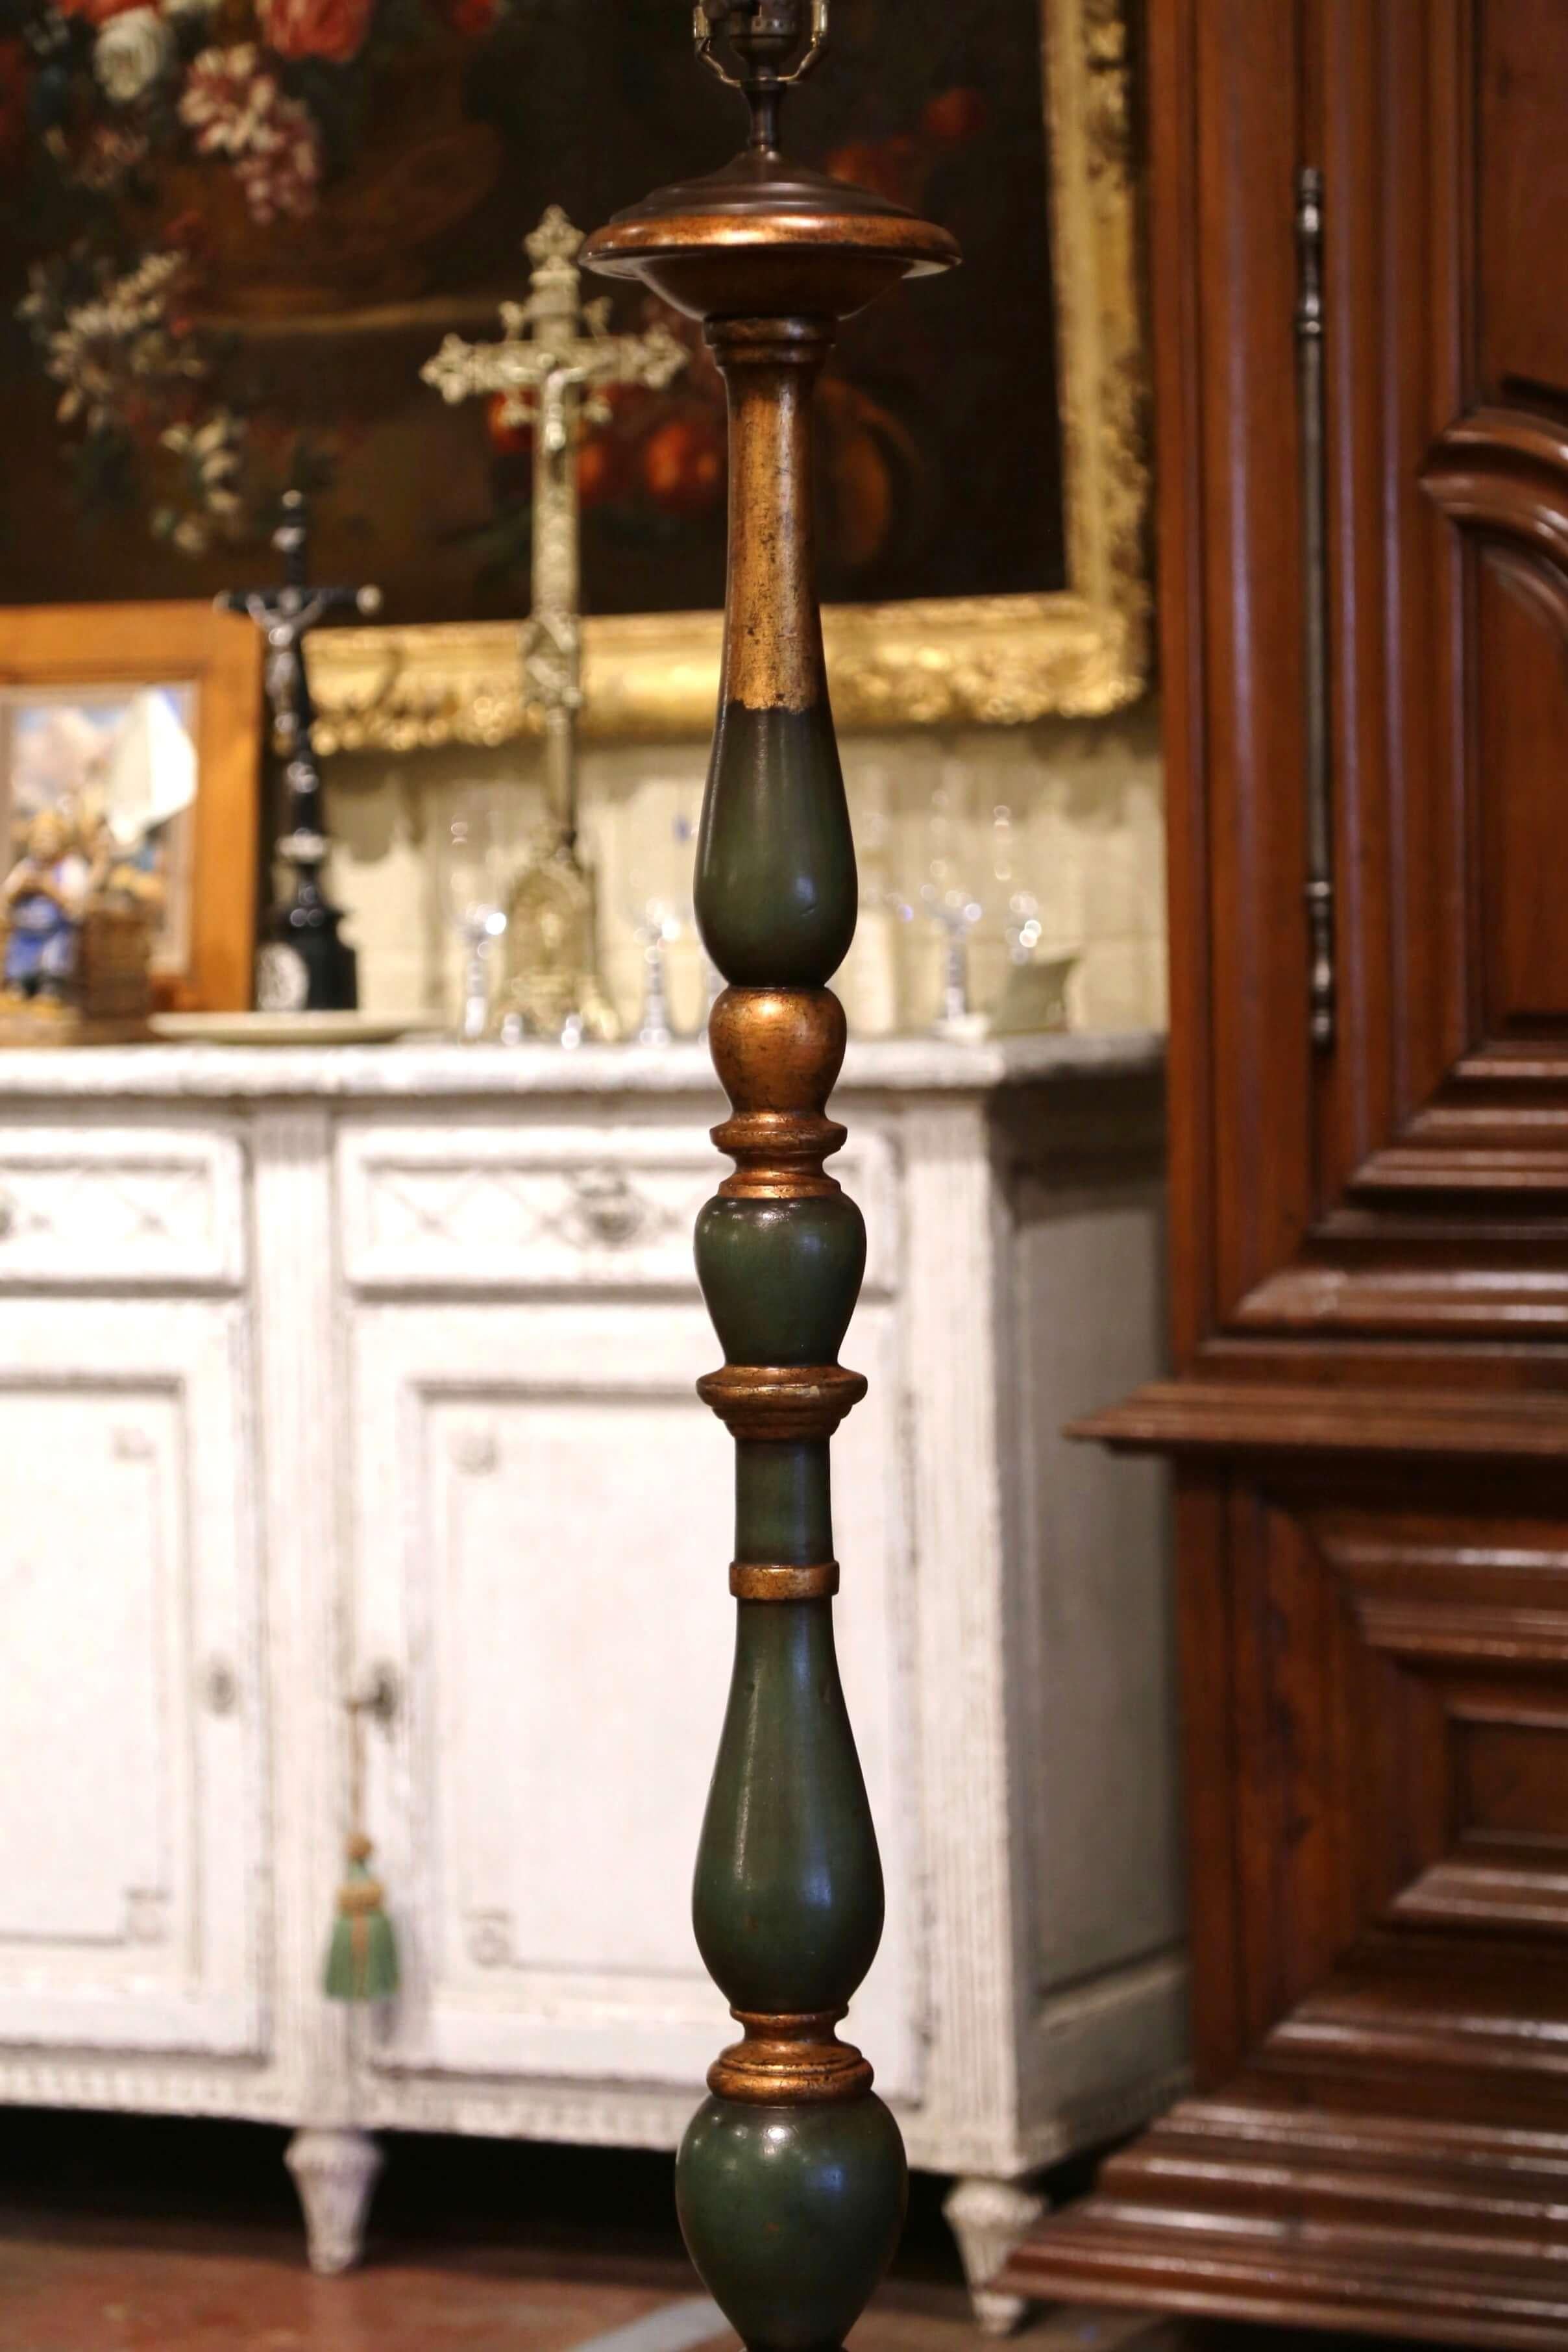 Diese elegante antike Stehlampe wurde um 1920 in Frankreich hergestellt. Die Lampe steht auf einem runden Stiel über einem langen, geschnitzten und gedrechselten Stiel; die Leuchte ist mit einem einzigen zentralen Licht ausgestattet. Die Stehlampe